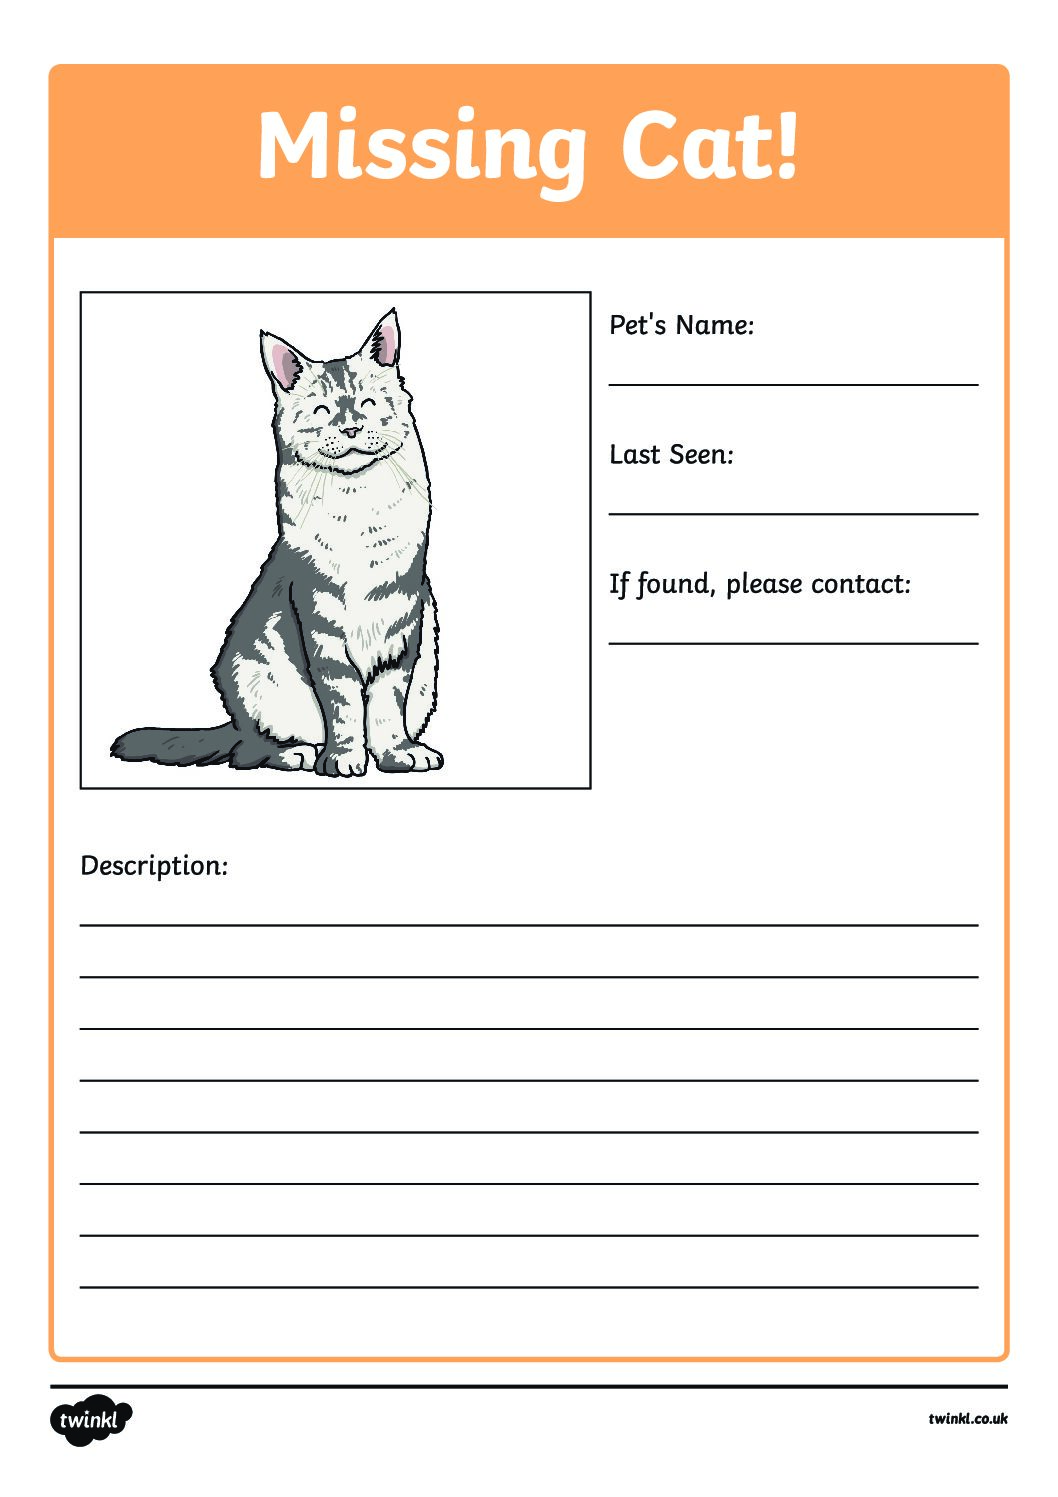 Pet writing 3. MS.Cat. Missing Cat. Describe your Pet. Pet writing.